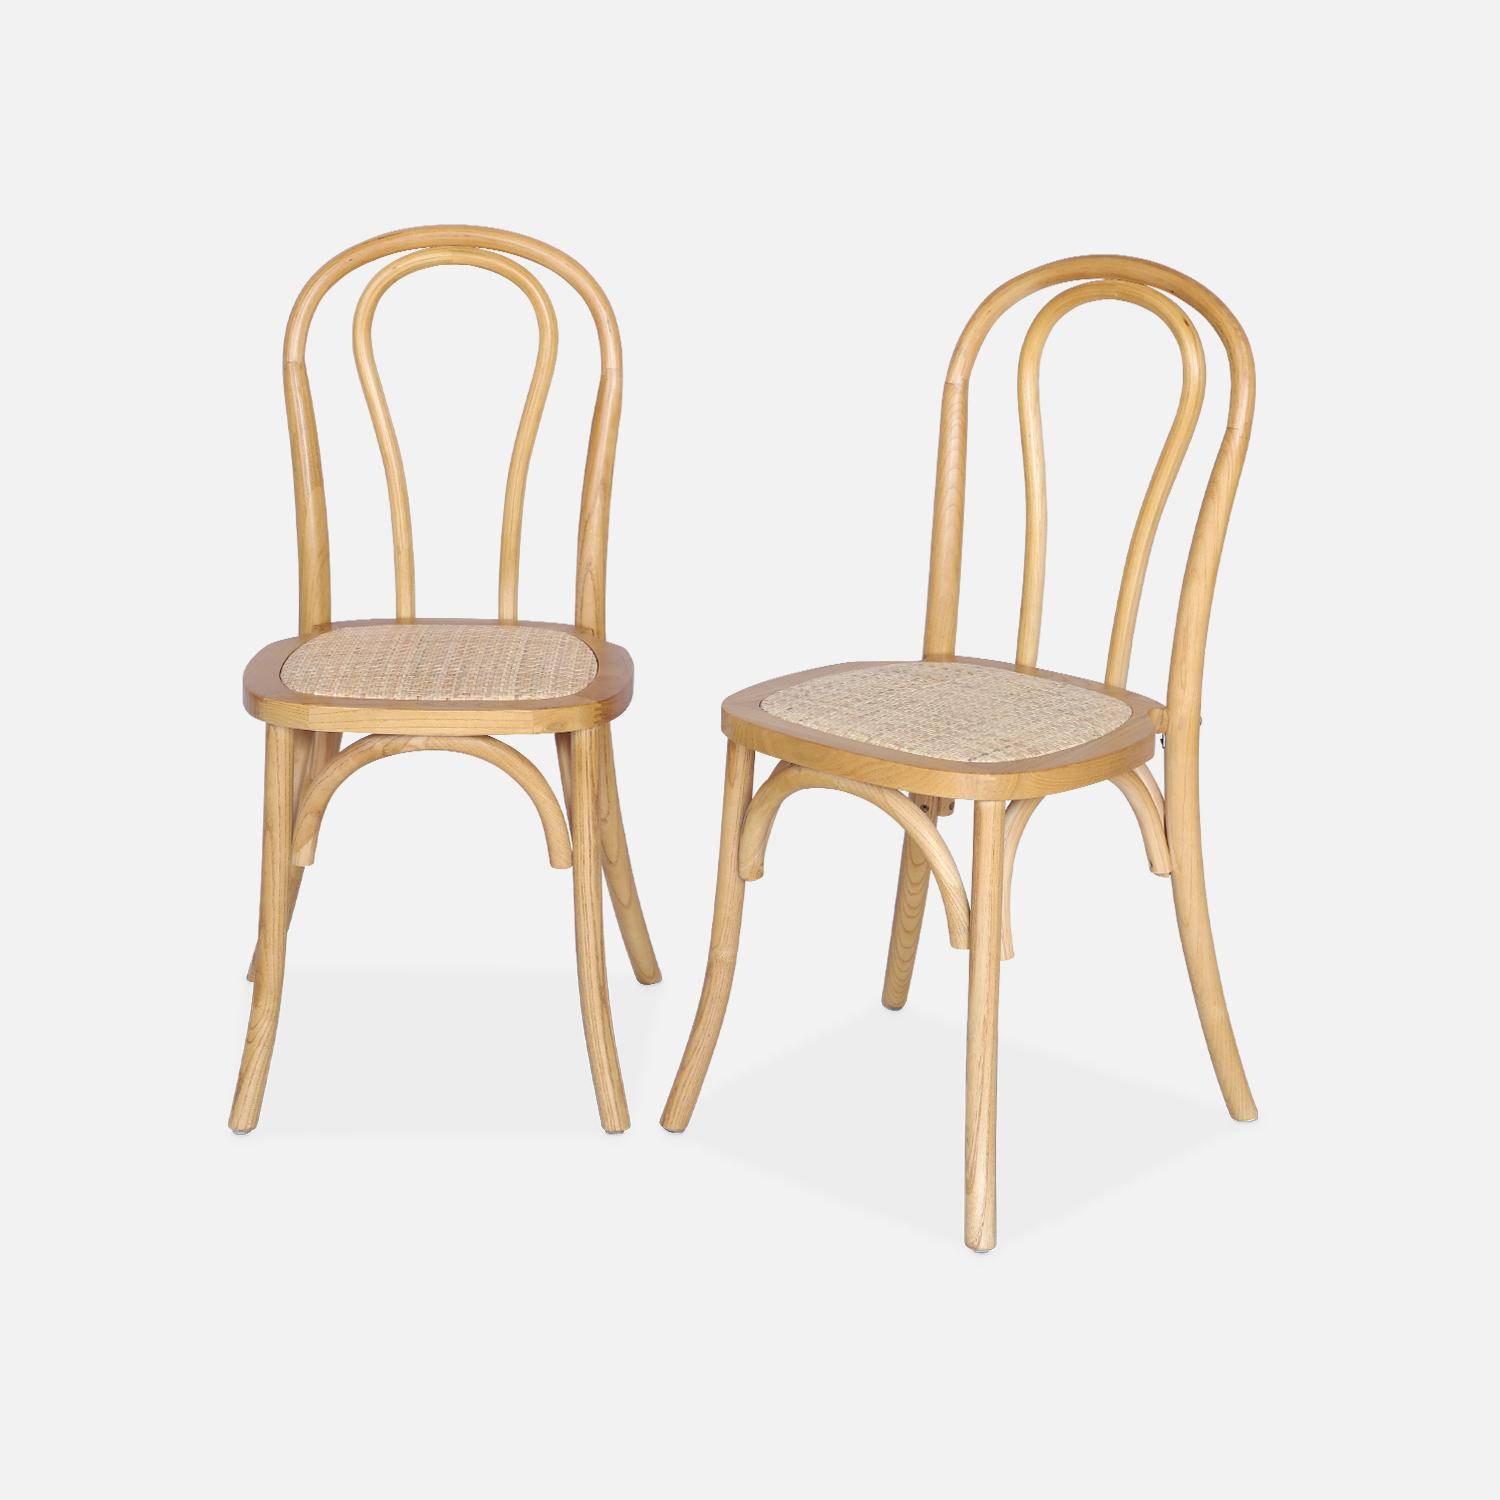 Set van twee vintage houten stoelen met rotan zitvlak en afgeronde rugleuning in natuurlijke houtkleur Photo1